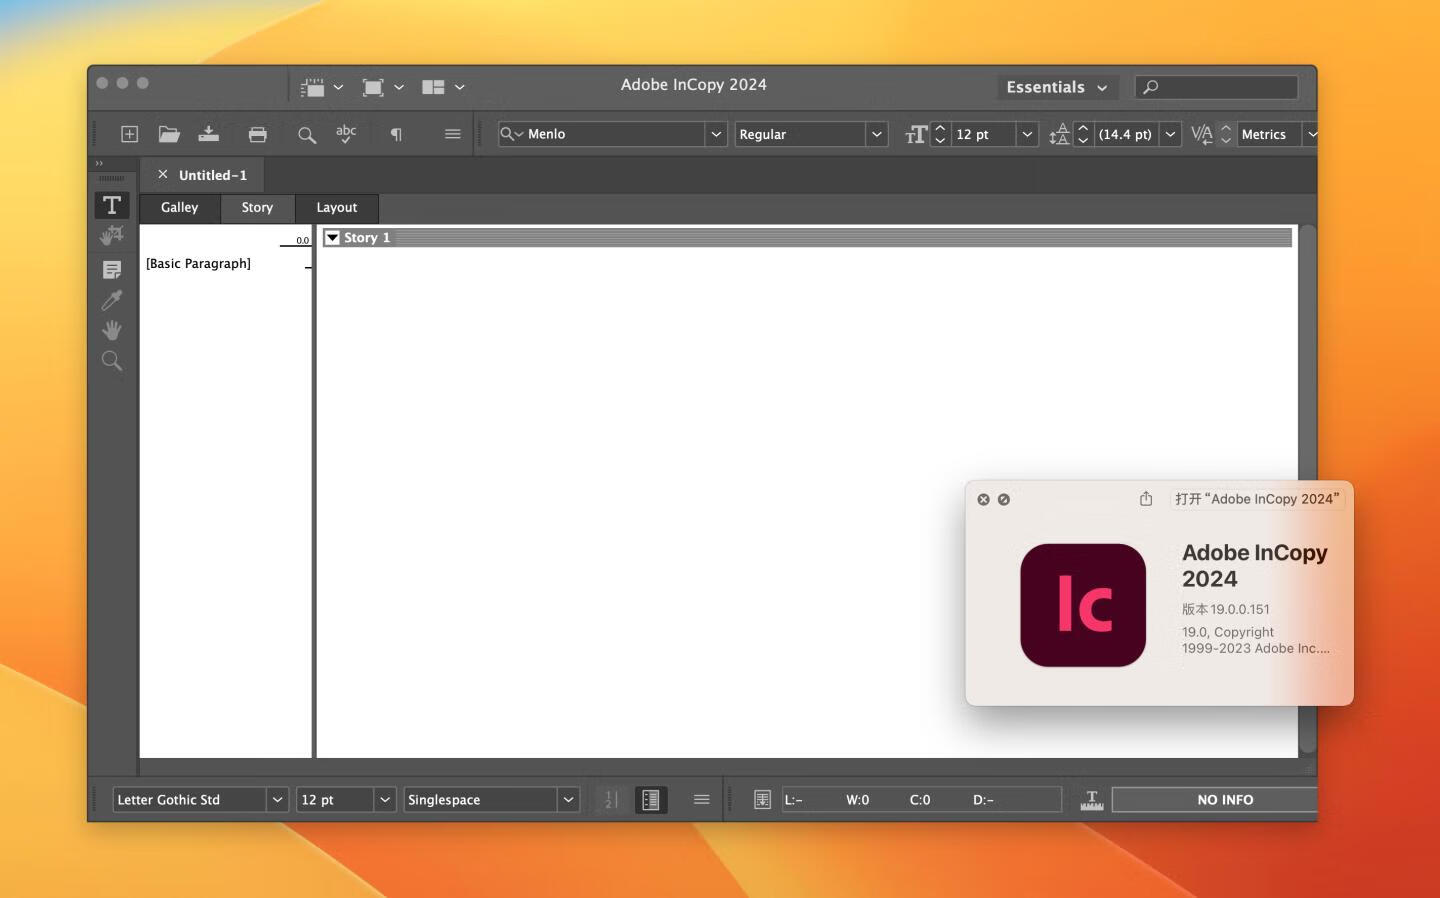 Adobe InDesign 2024 v19.0.0.151 for apple instal free